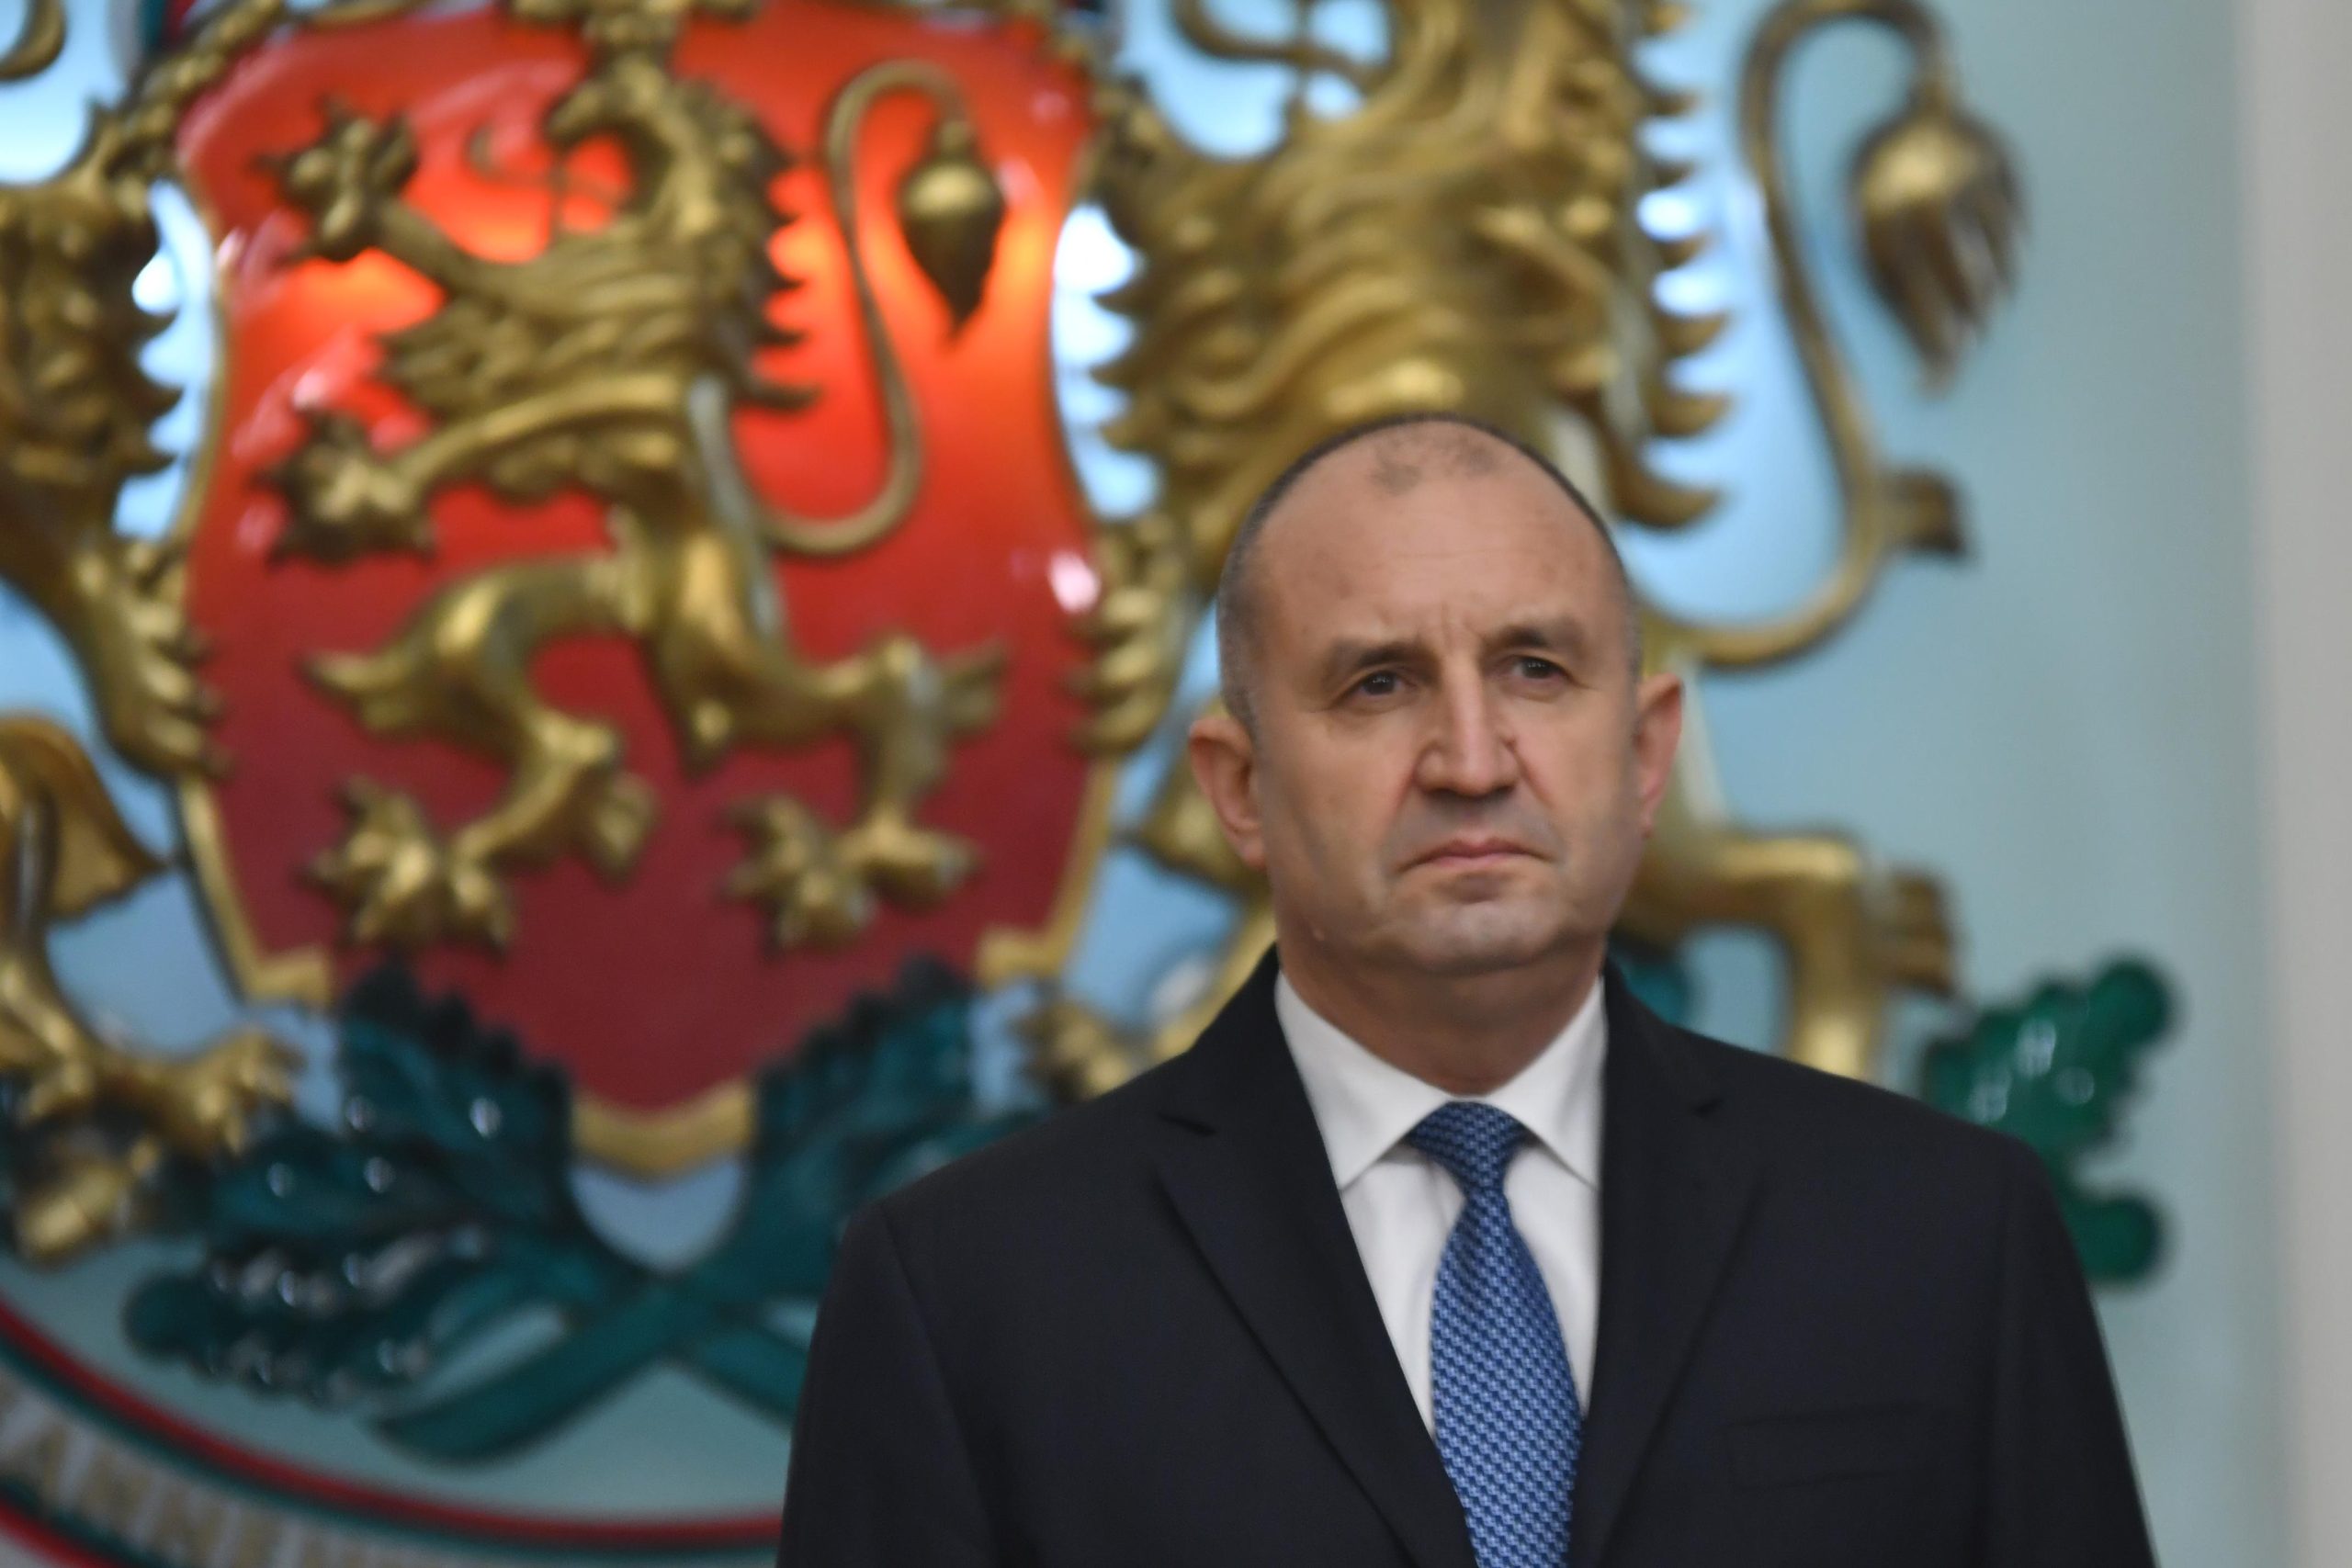 Президентът Румен Радев наложи вето върху възстановяването на правомощията на